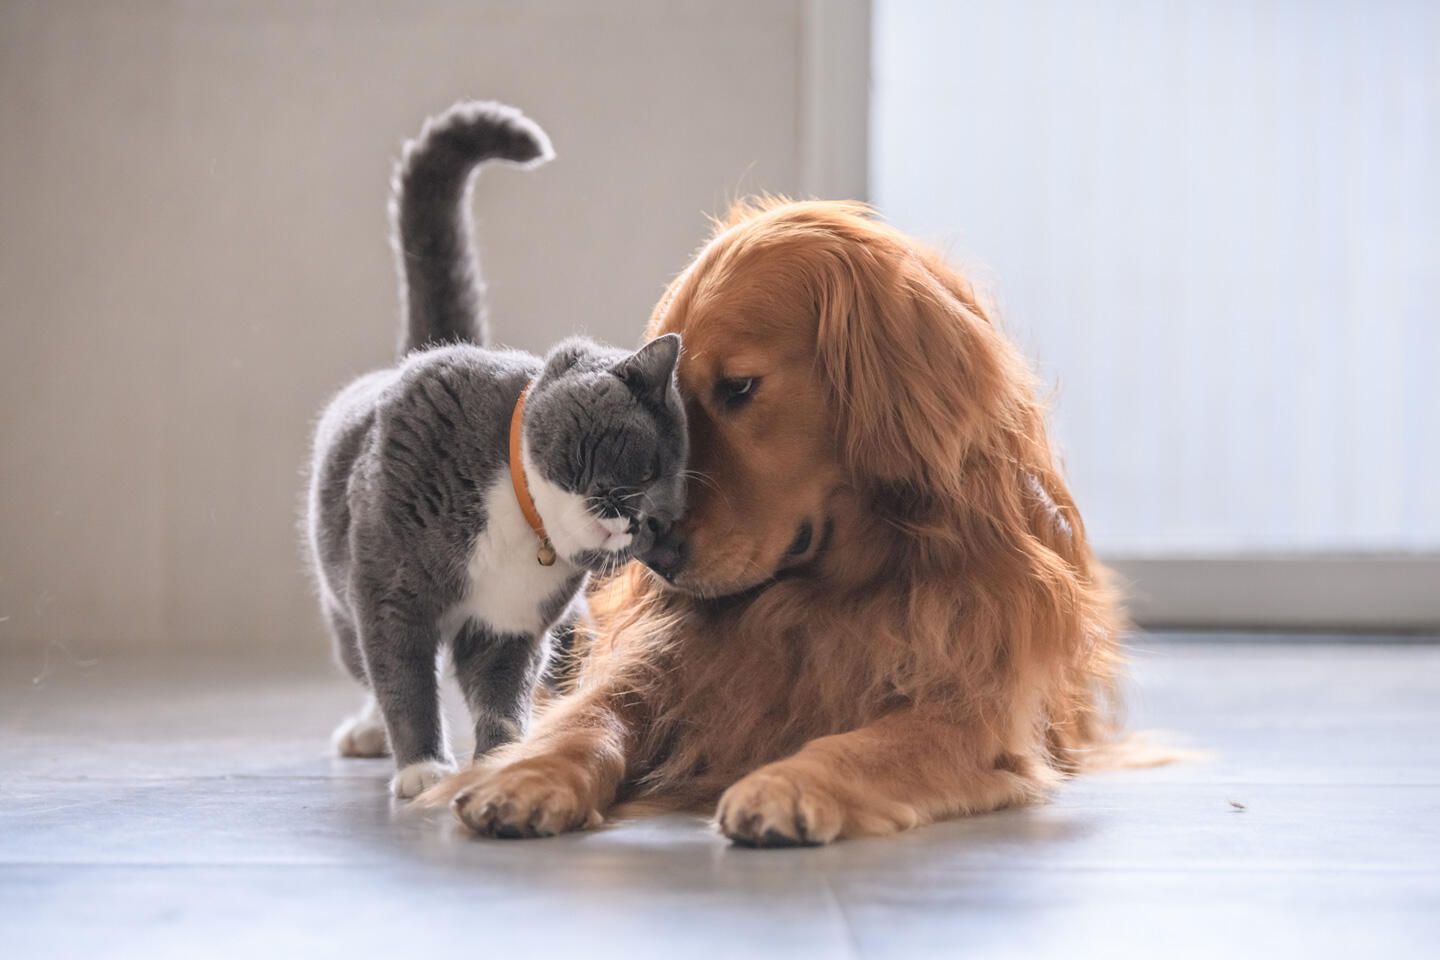 Un chien golden retriever et un chat gris et blanc se touchent tendrement le nez, symbolisant l'amitié entre espèces différentes. L'image capture un moment de douce interaction dans un environnement intérieur éclairé naturellement.